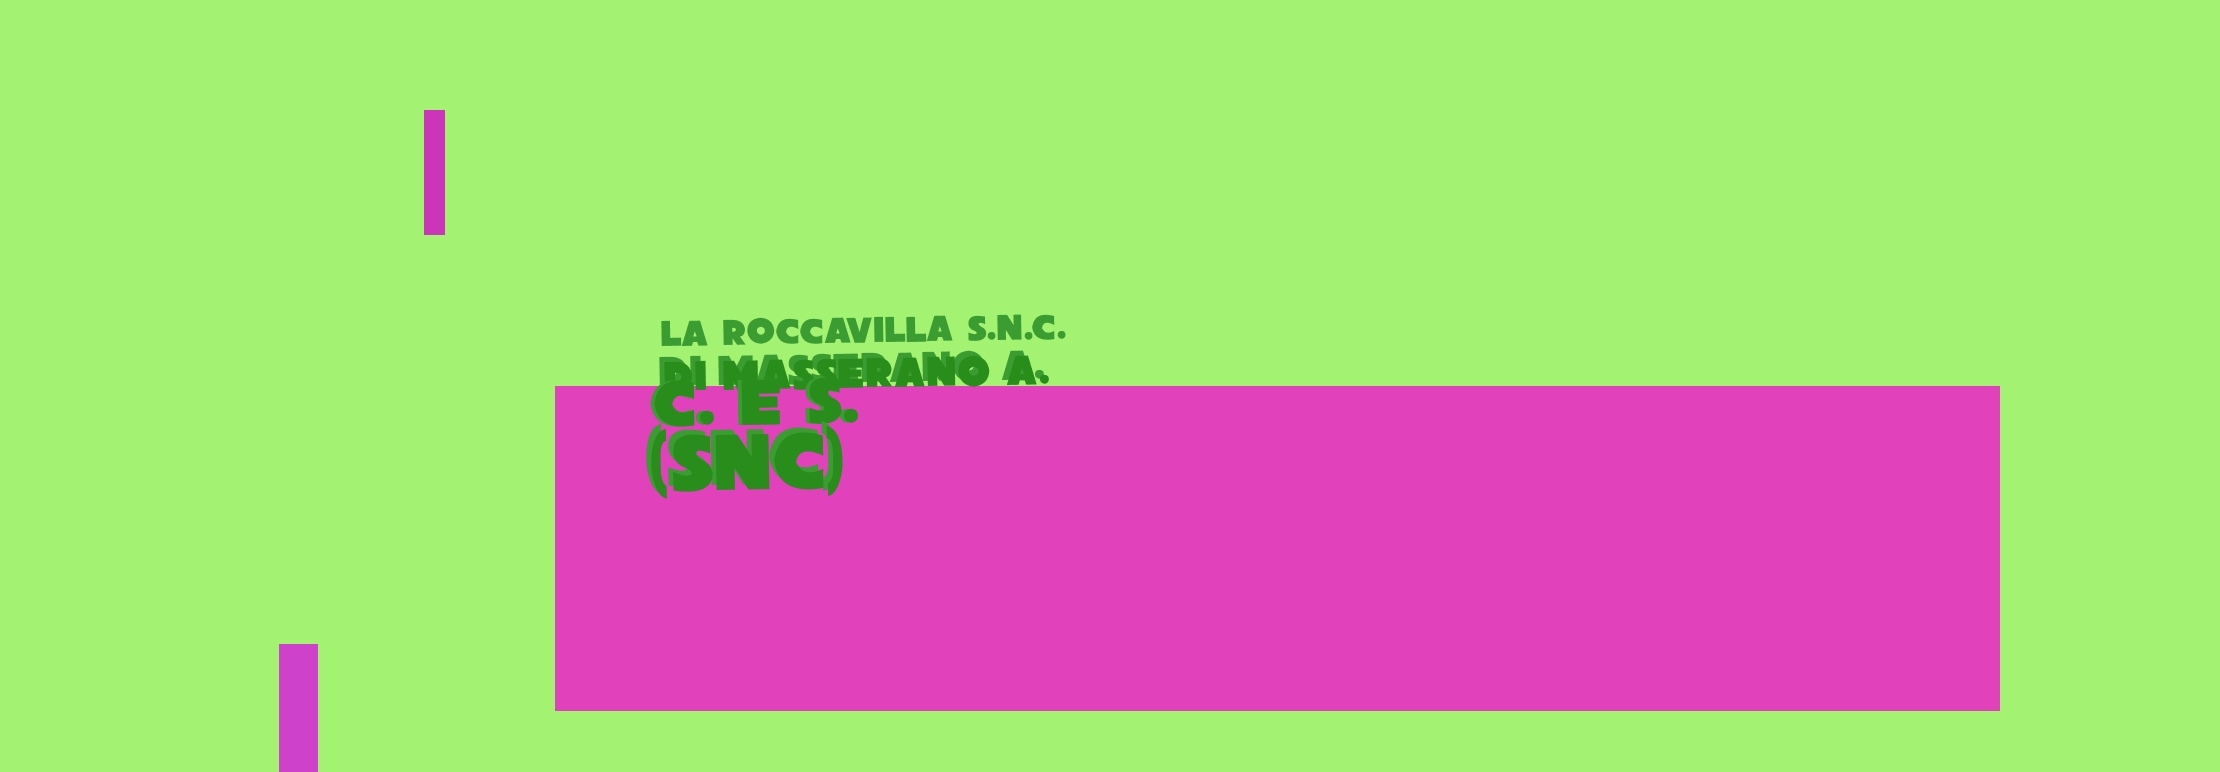 logo LA ROCCAVILLA Snc DI MASSERANO A. C. e S. (SNC)